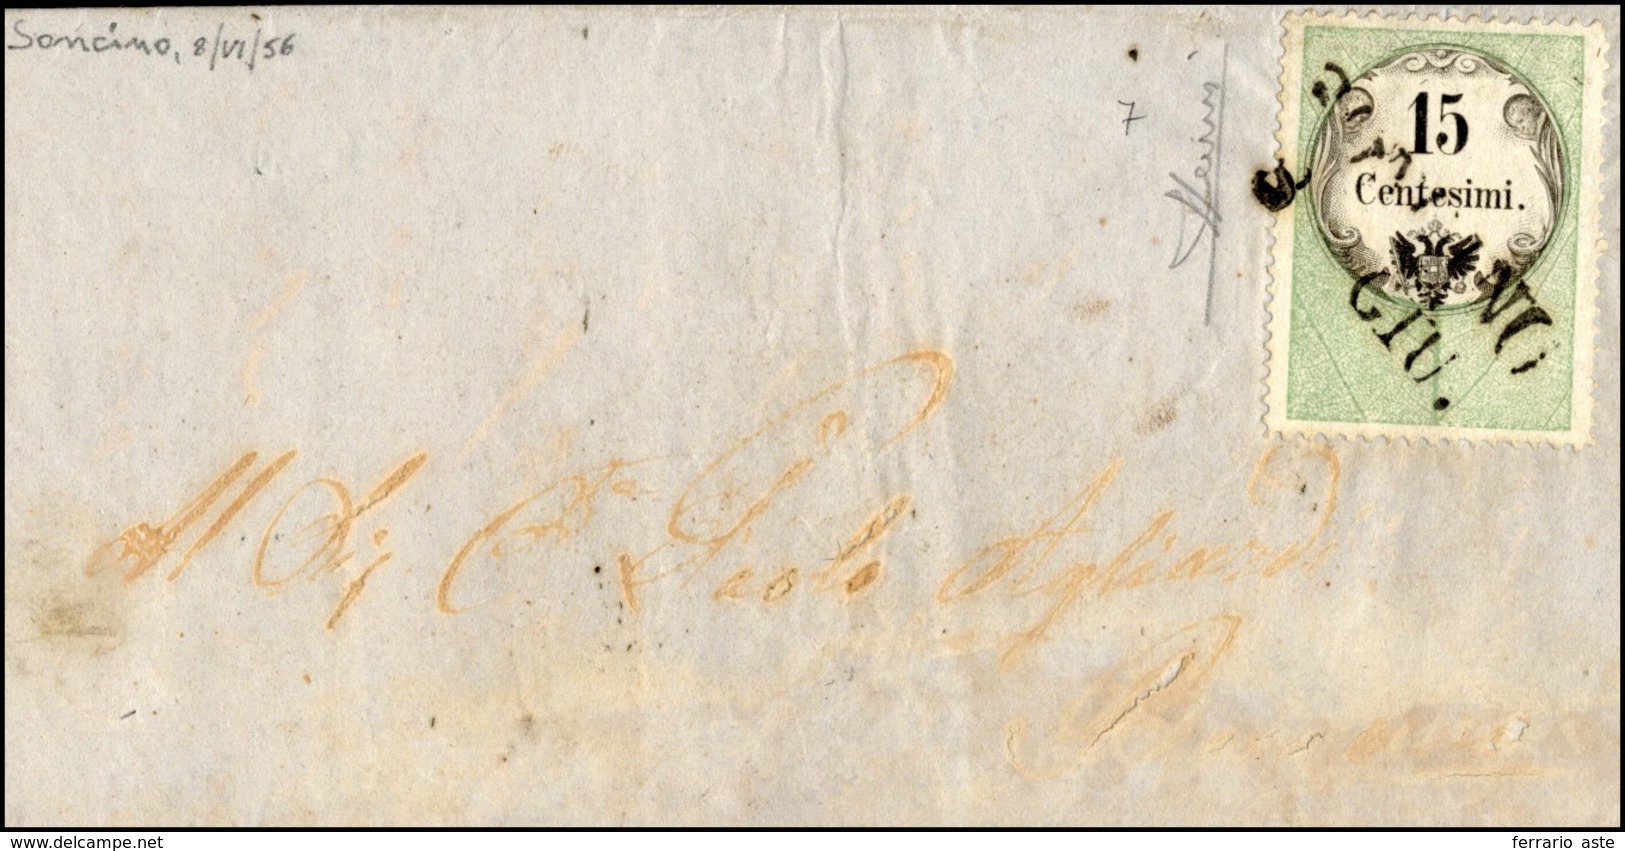 141 1856 - 15 Cent., Marca Da Bollo Calcografica (7), Perfetta, Su Lettera Da Soncino 8/6/1856 (punti 9)... - Lombardo-Vénétie